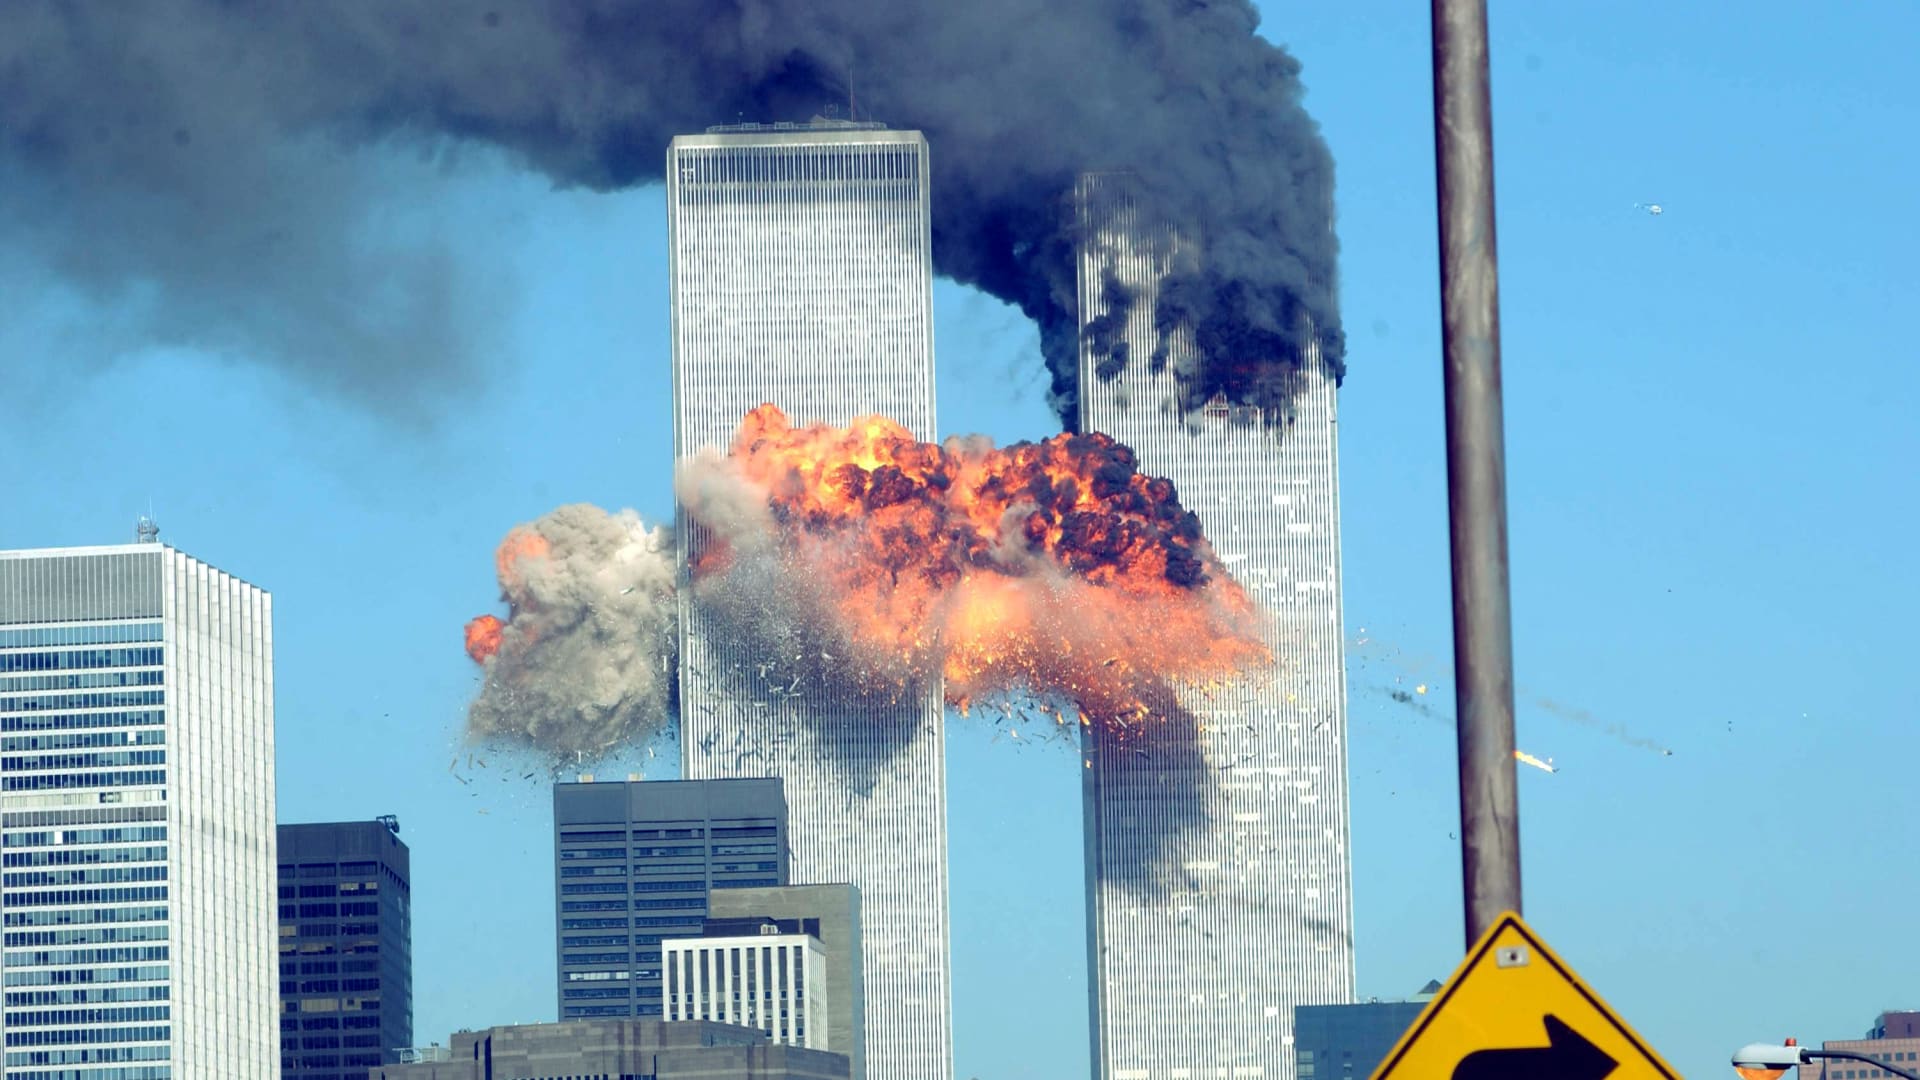 بوش في ذكرى هجمات 11 سبتمبر عن المتطرفين العنيفين في الداخل الأمريكي: إنهم نسل من نفس الروح الكريهة